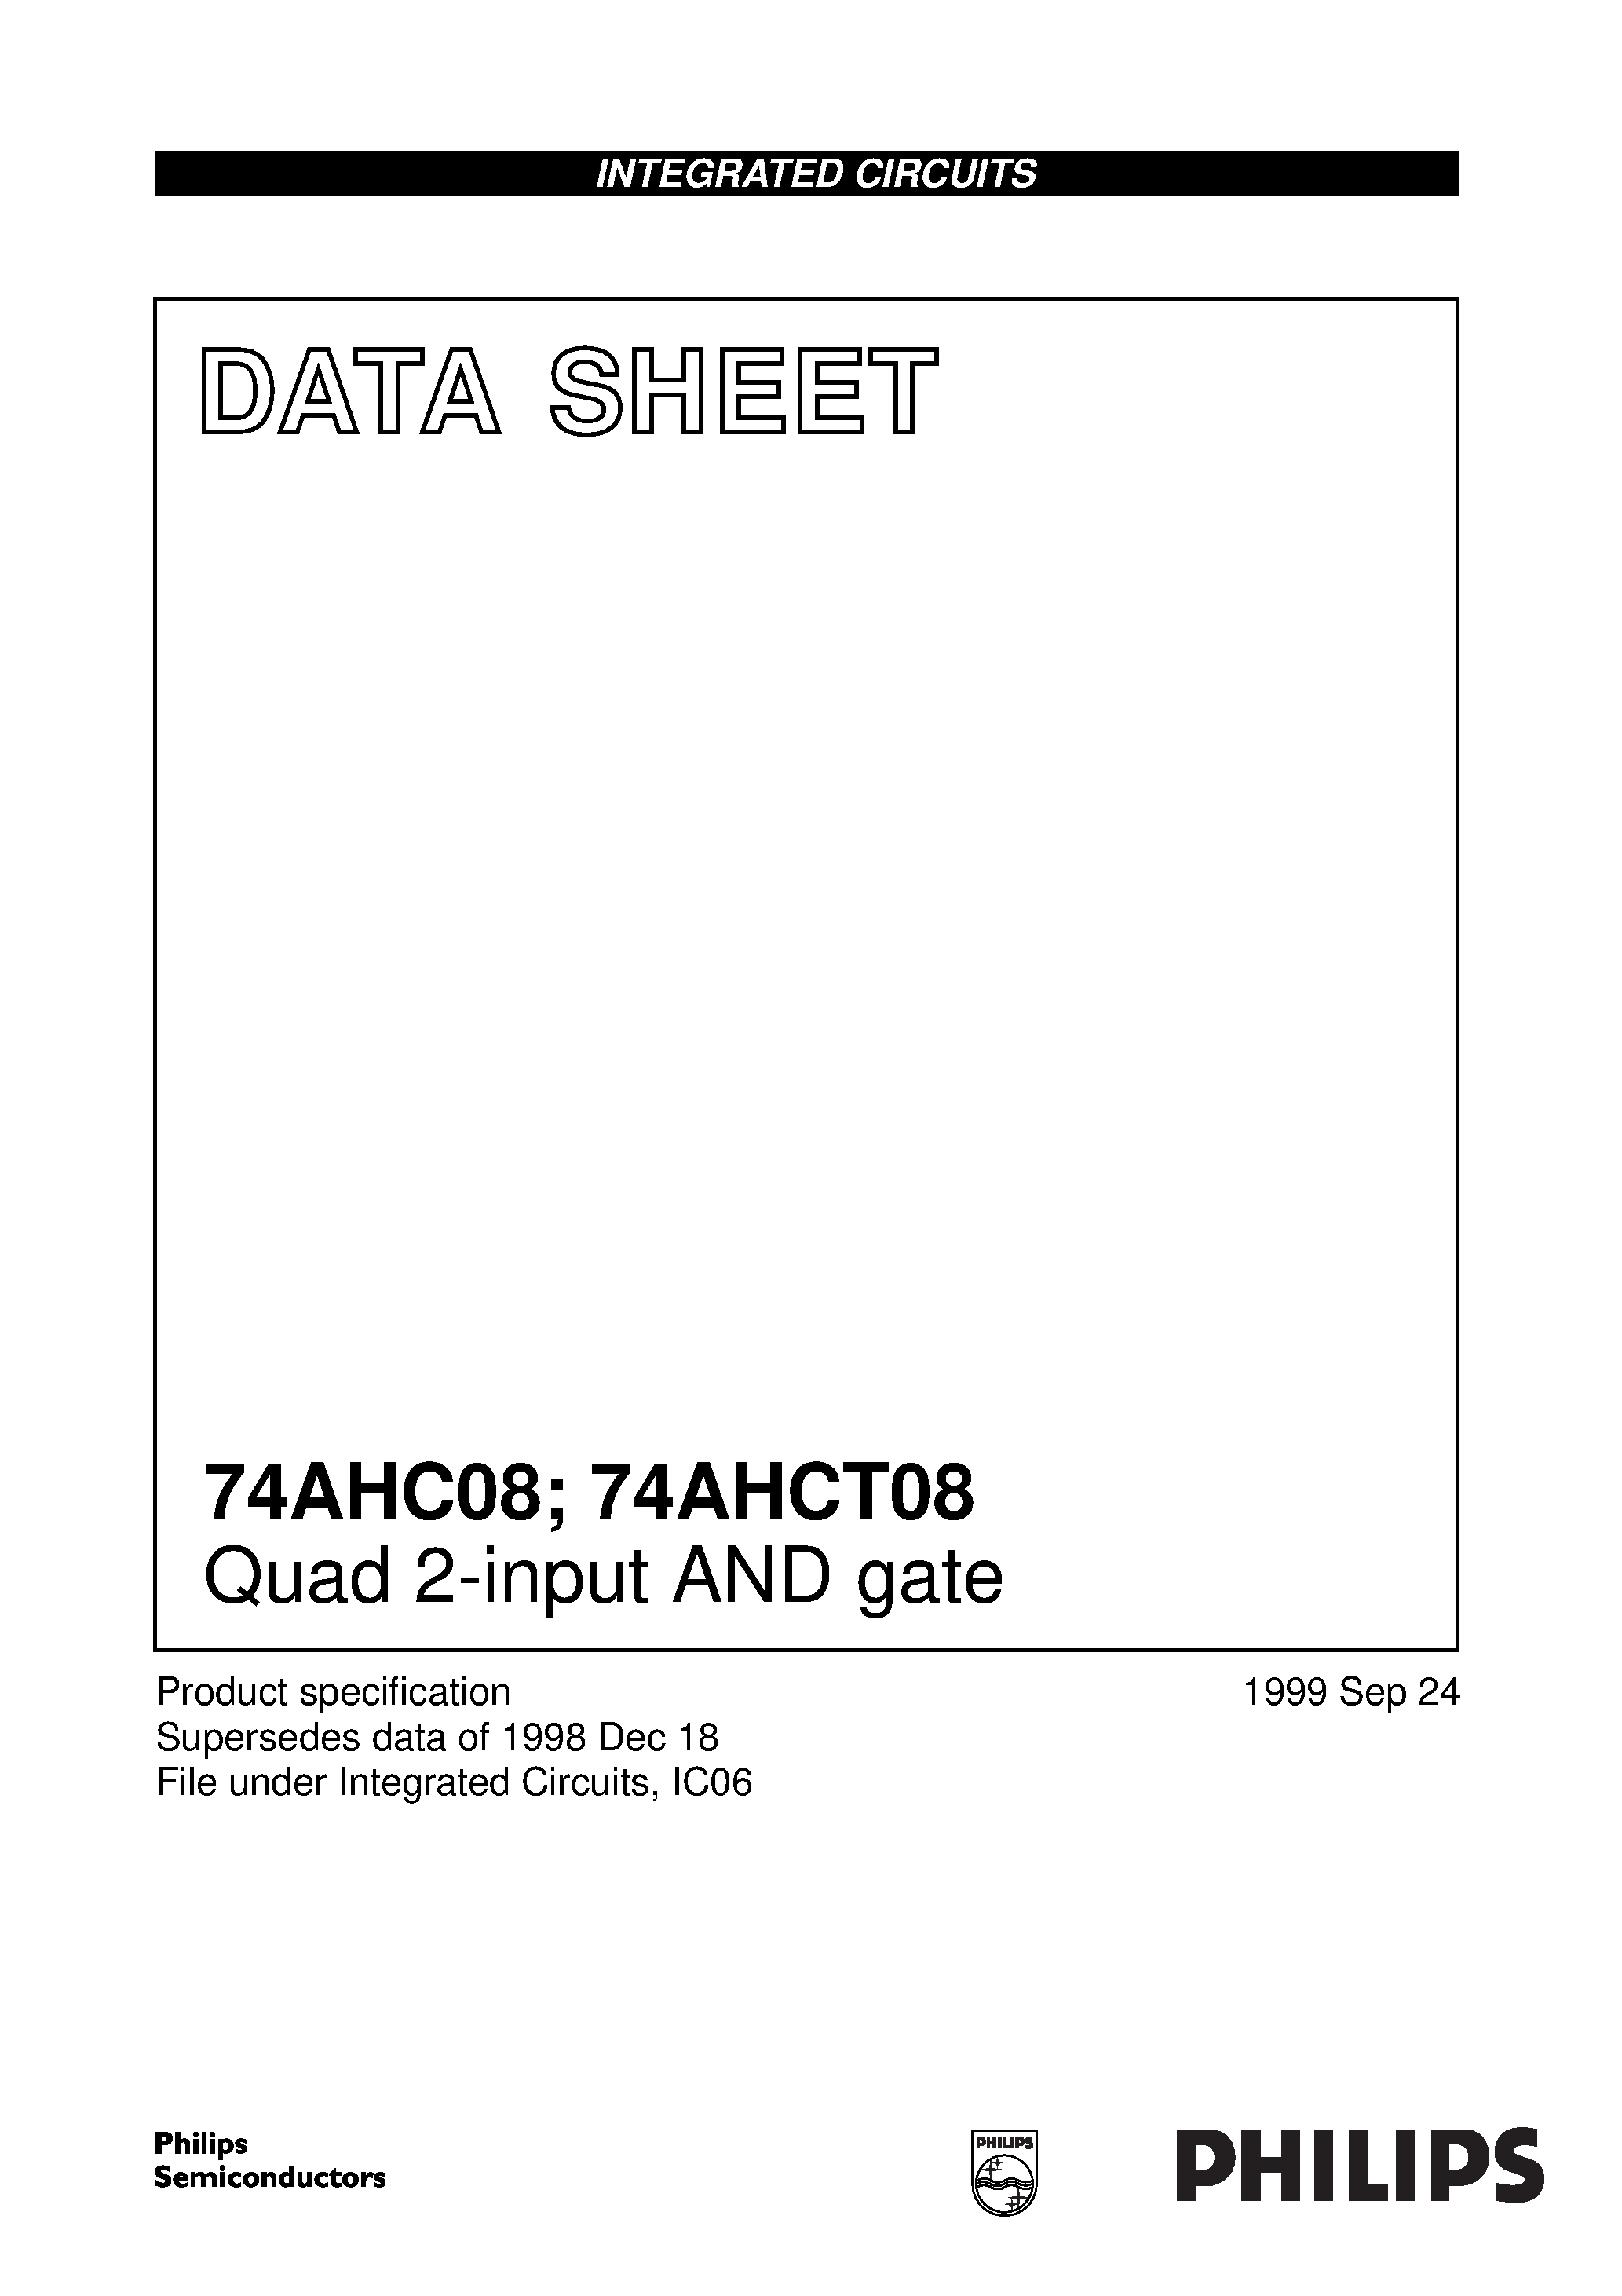 Даташит 74AHC08PW - Quad 2-input AND gate страница 1